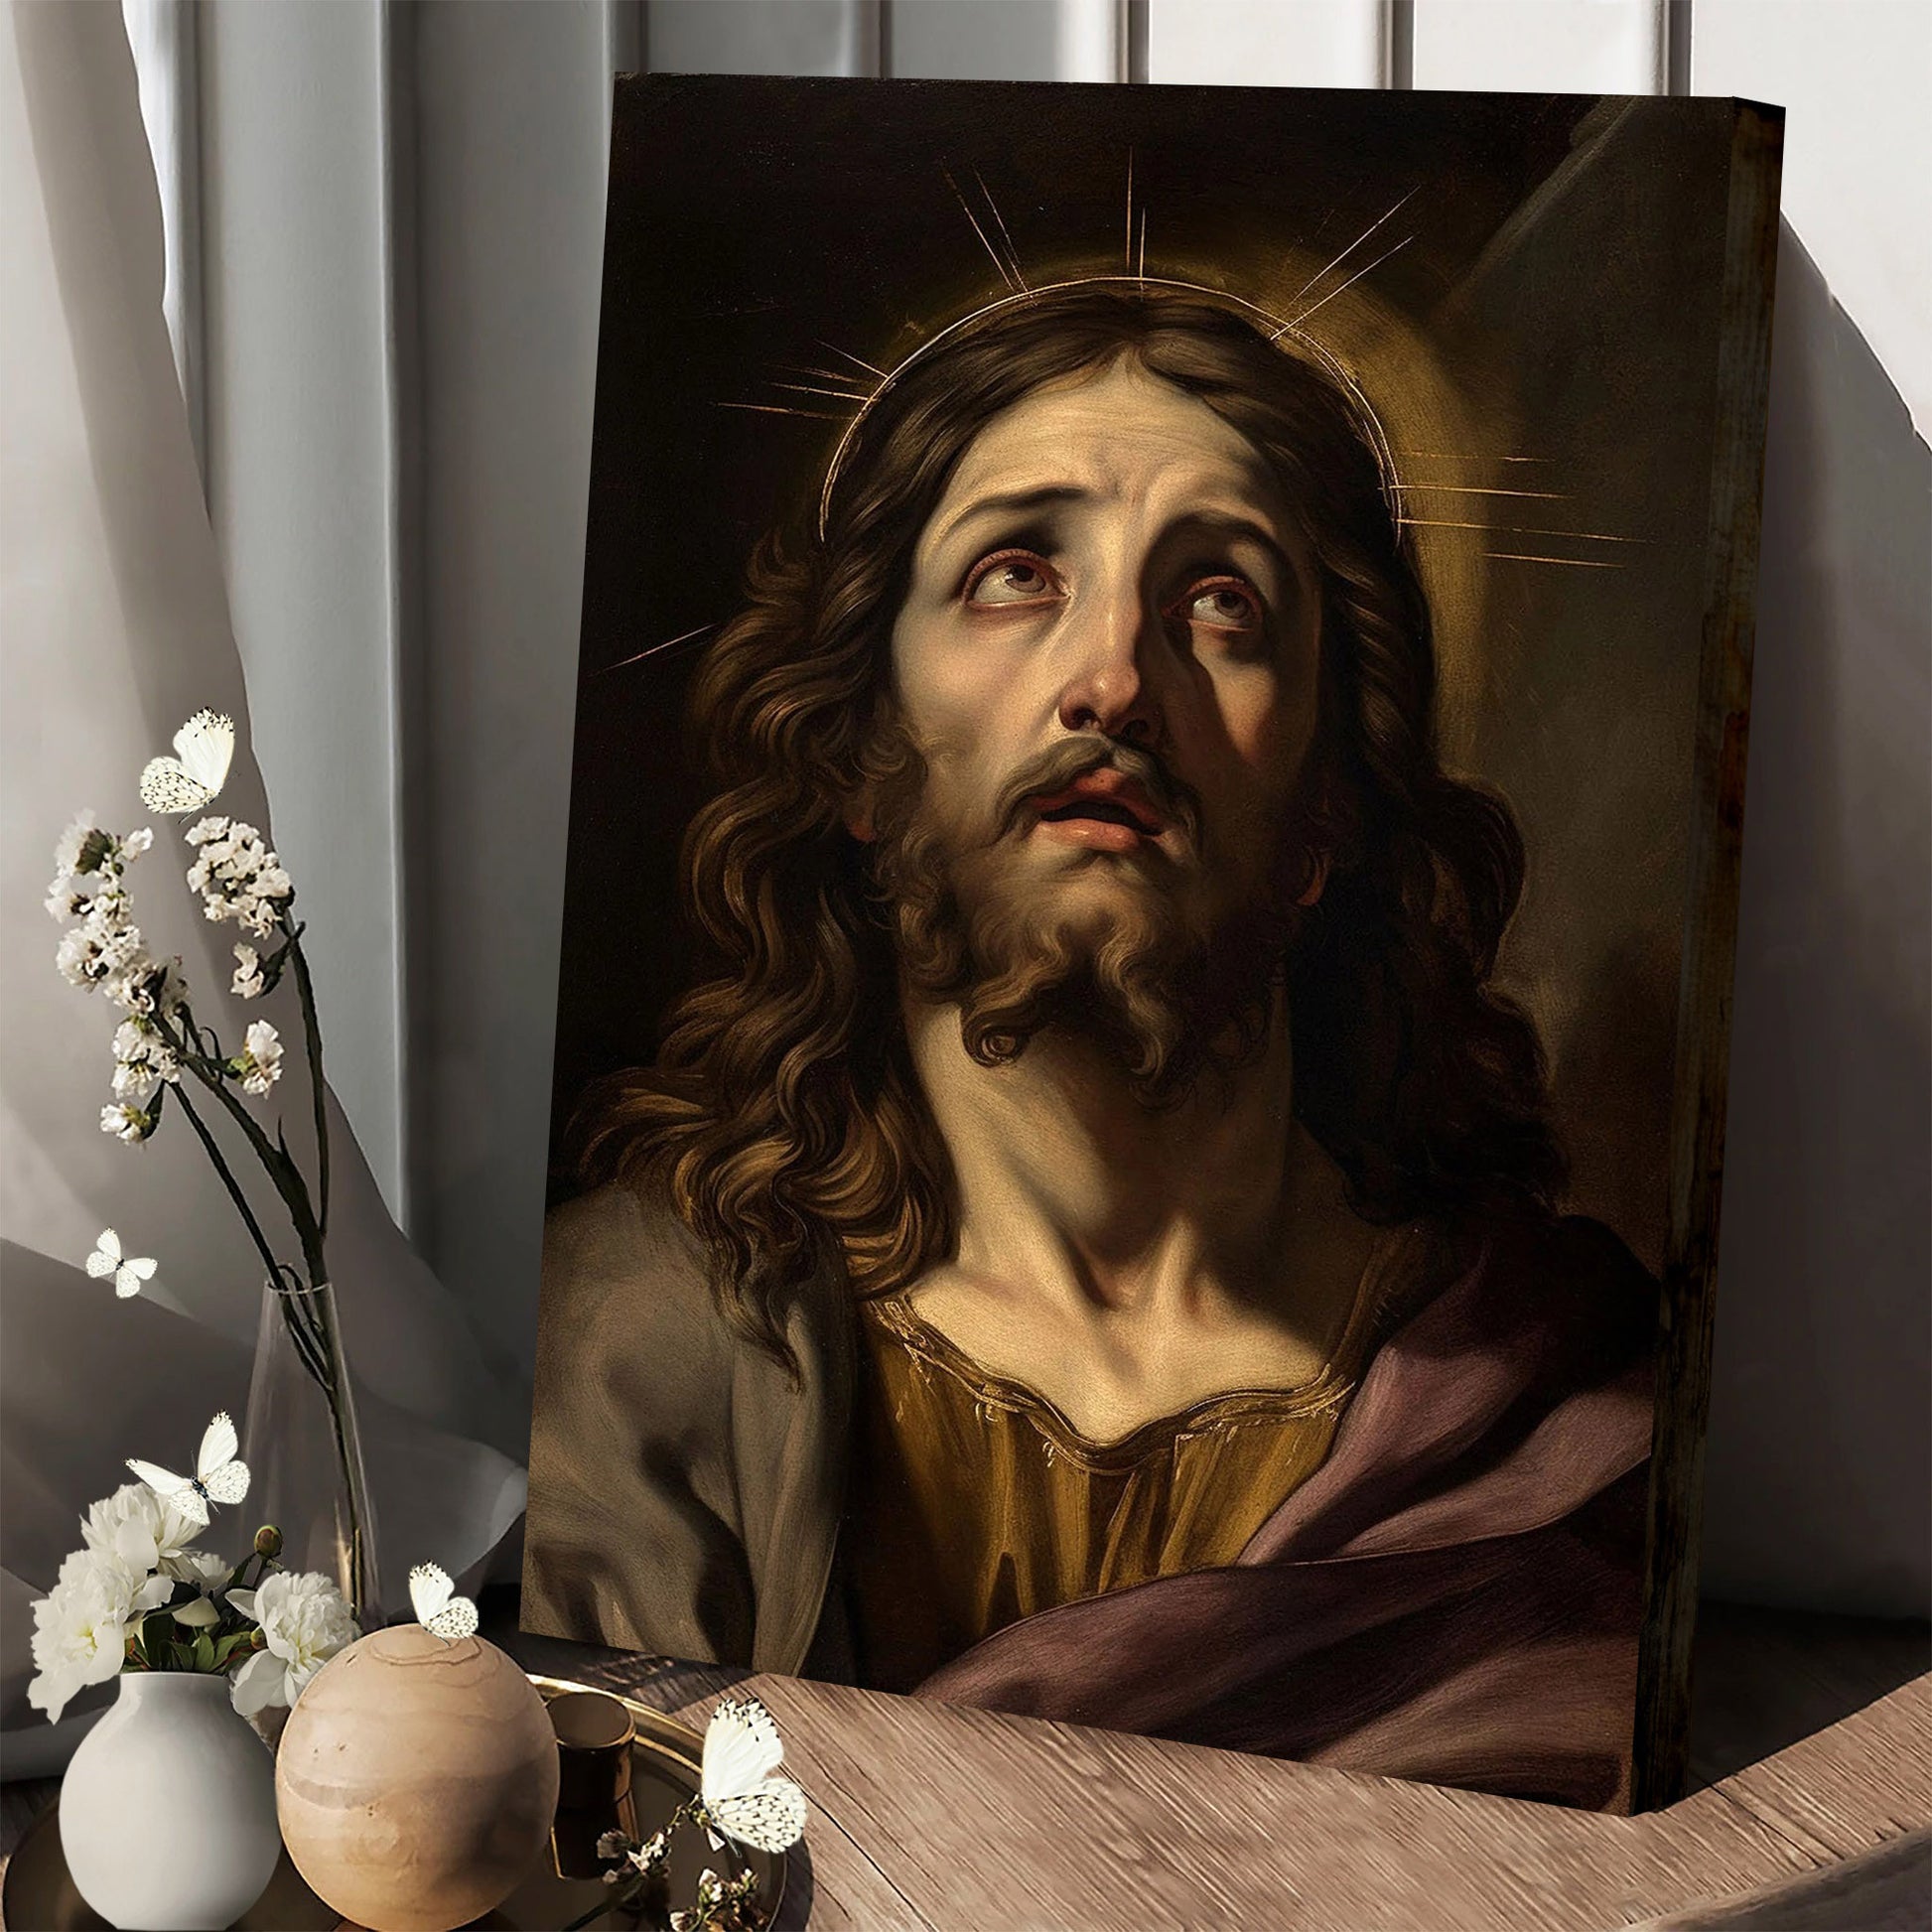 Portrait Of Jesus Christ Art Renaissance Style 1 - Canvas Pictures - Jesus Canvas Art - Christian Wall Art